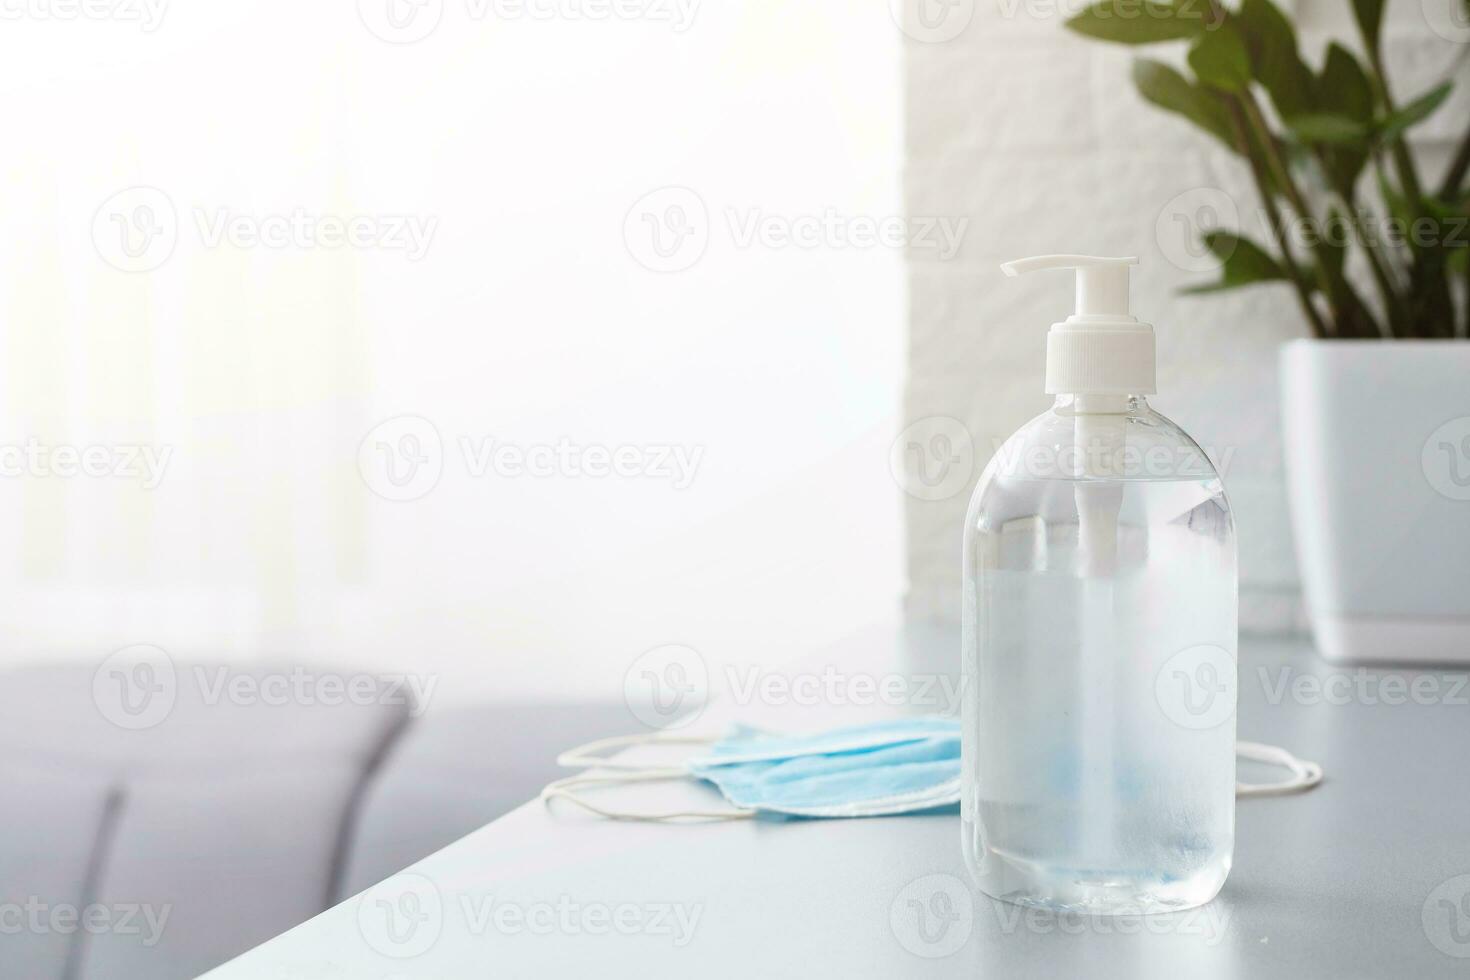 cara mascaras y mano desinfectante botella en mesa para peple Lavado manos a ayuda detener extensión brote coronavirus covid-19 para público salud la seguridad foto